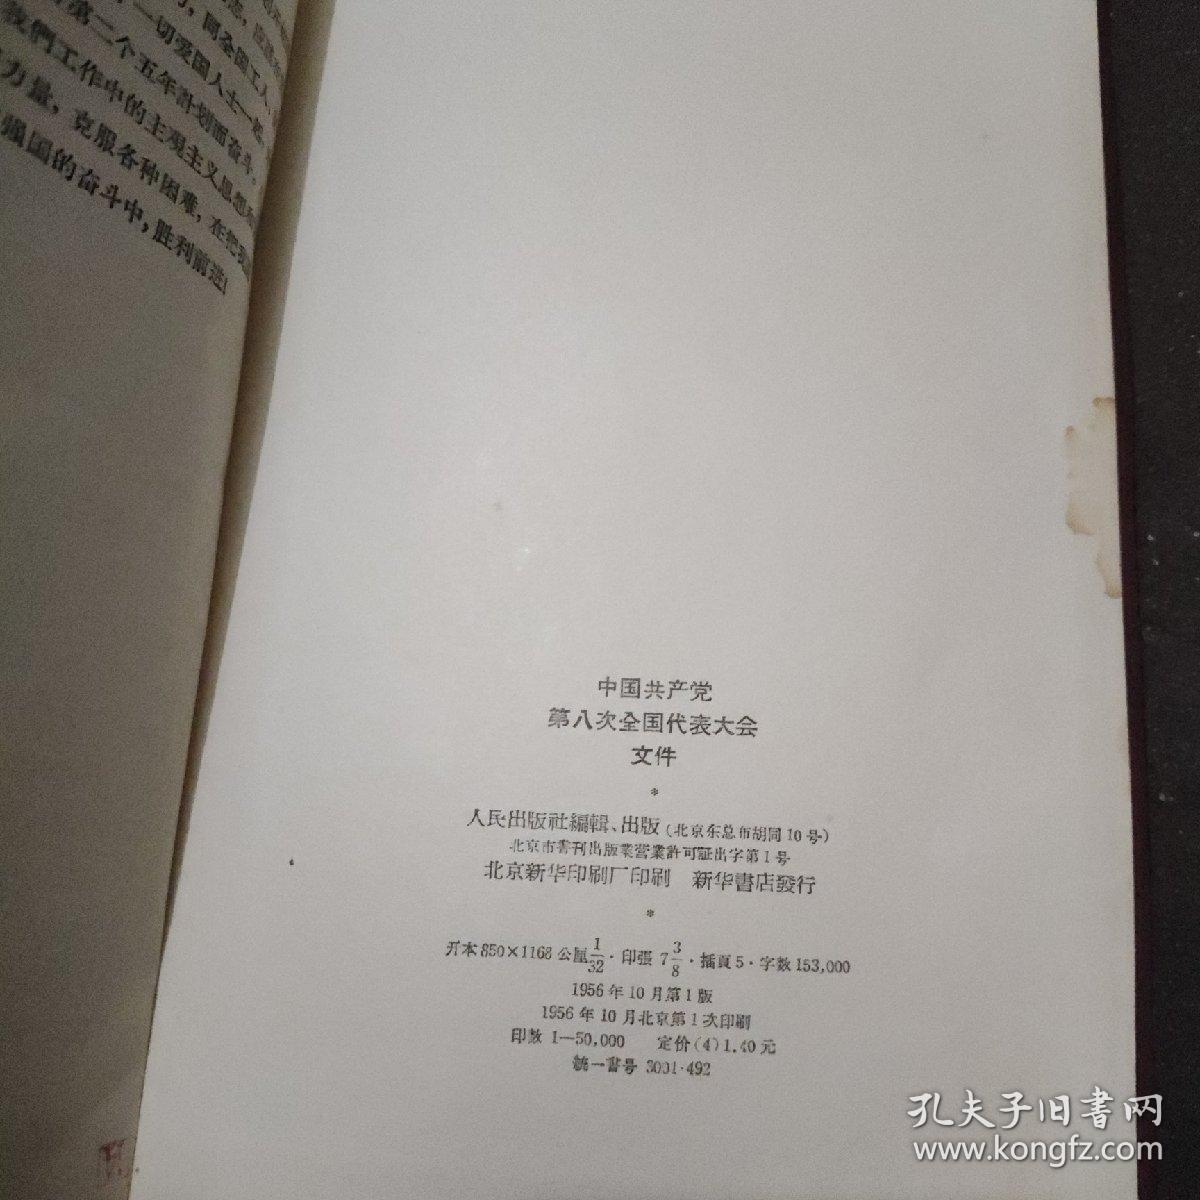 《中国共产党第八次全国代表大会文件》 本书1956年十月初版，书中有毛泽东开幕词、刘少奇和邓小平的报告、中国共产党党章、及周恩来作的第二个五年计划的建议的报告。